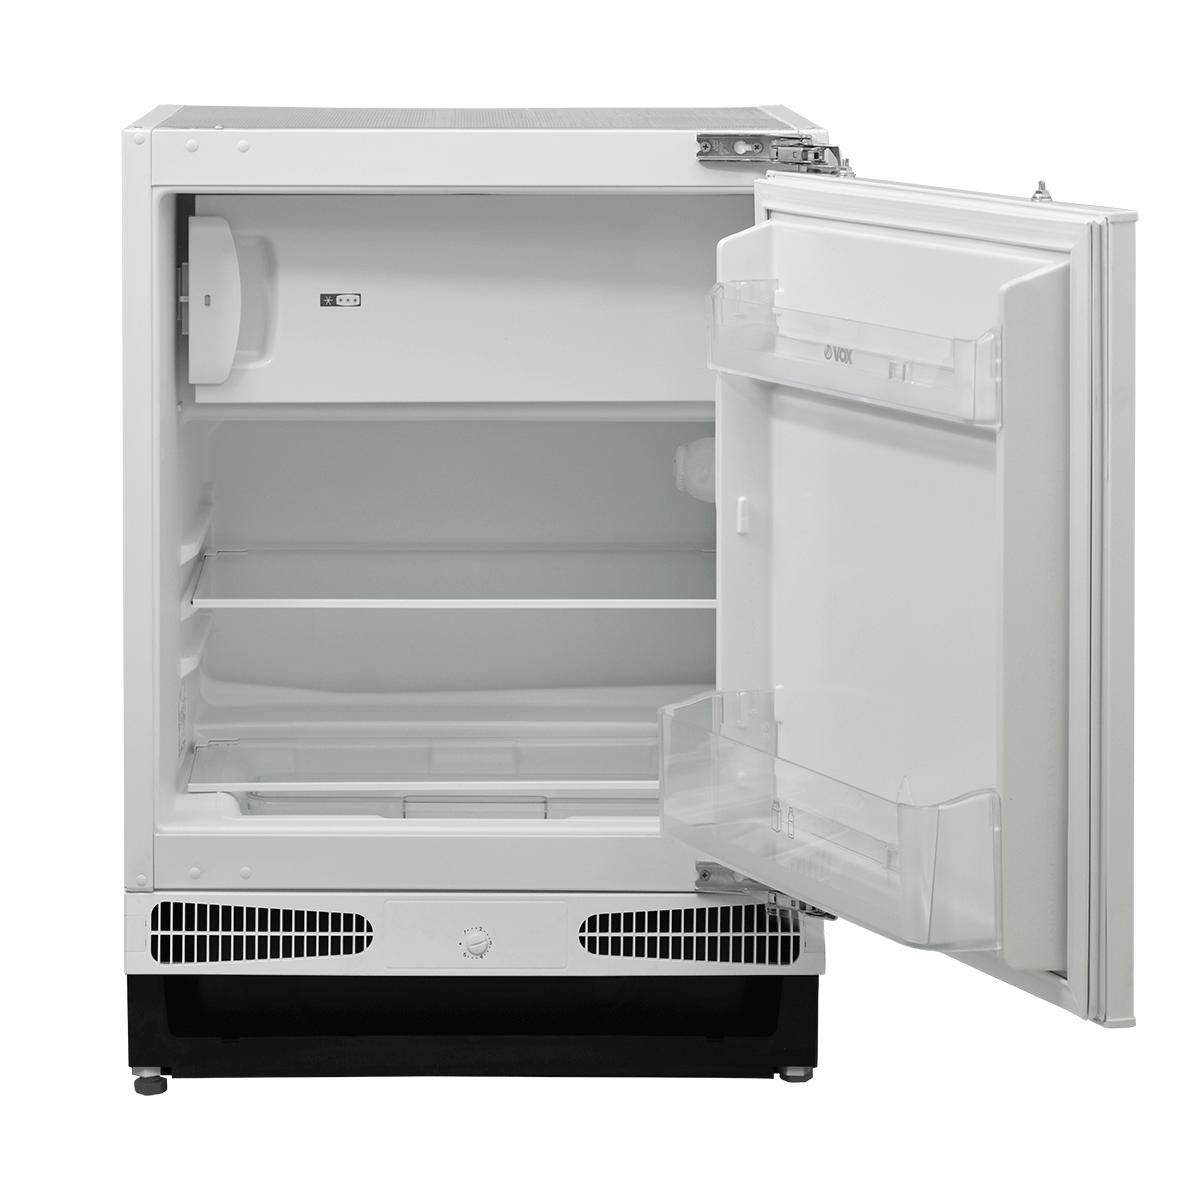 Built-in refrigerator IKS 1600 E 